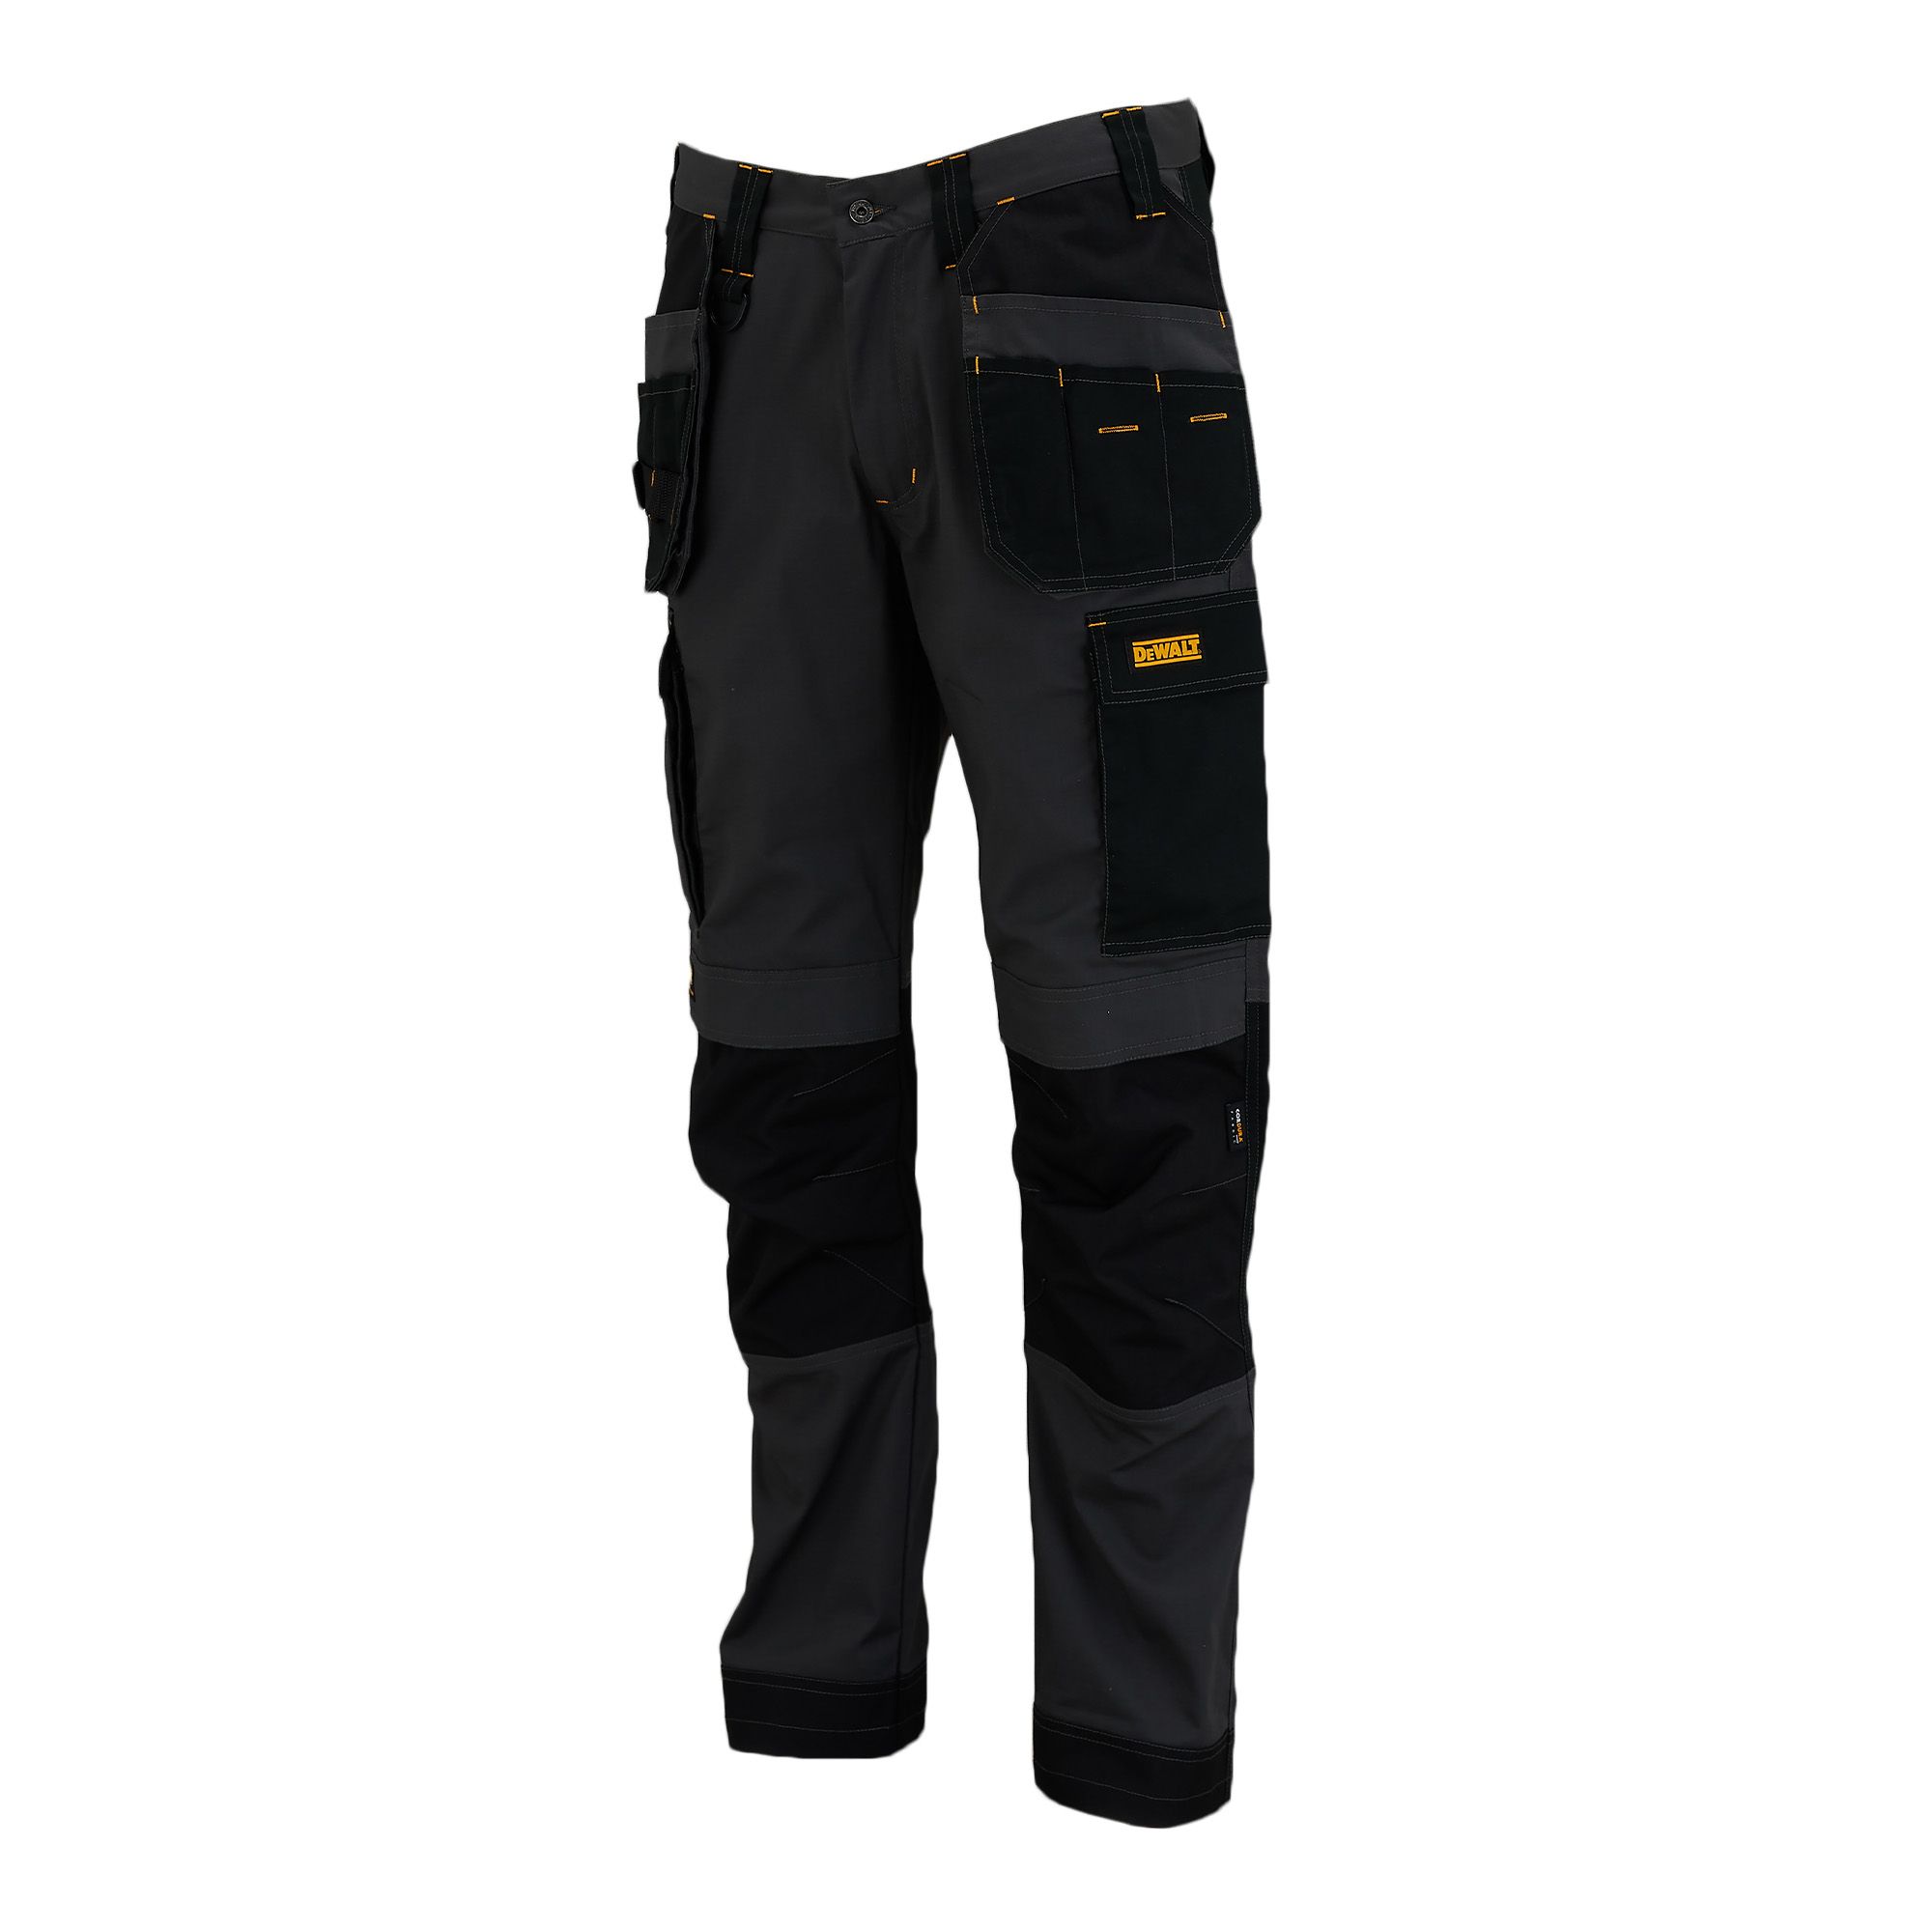 DeWalt Florida Grey & black Men's Holster pocket trousers, W38" L31"